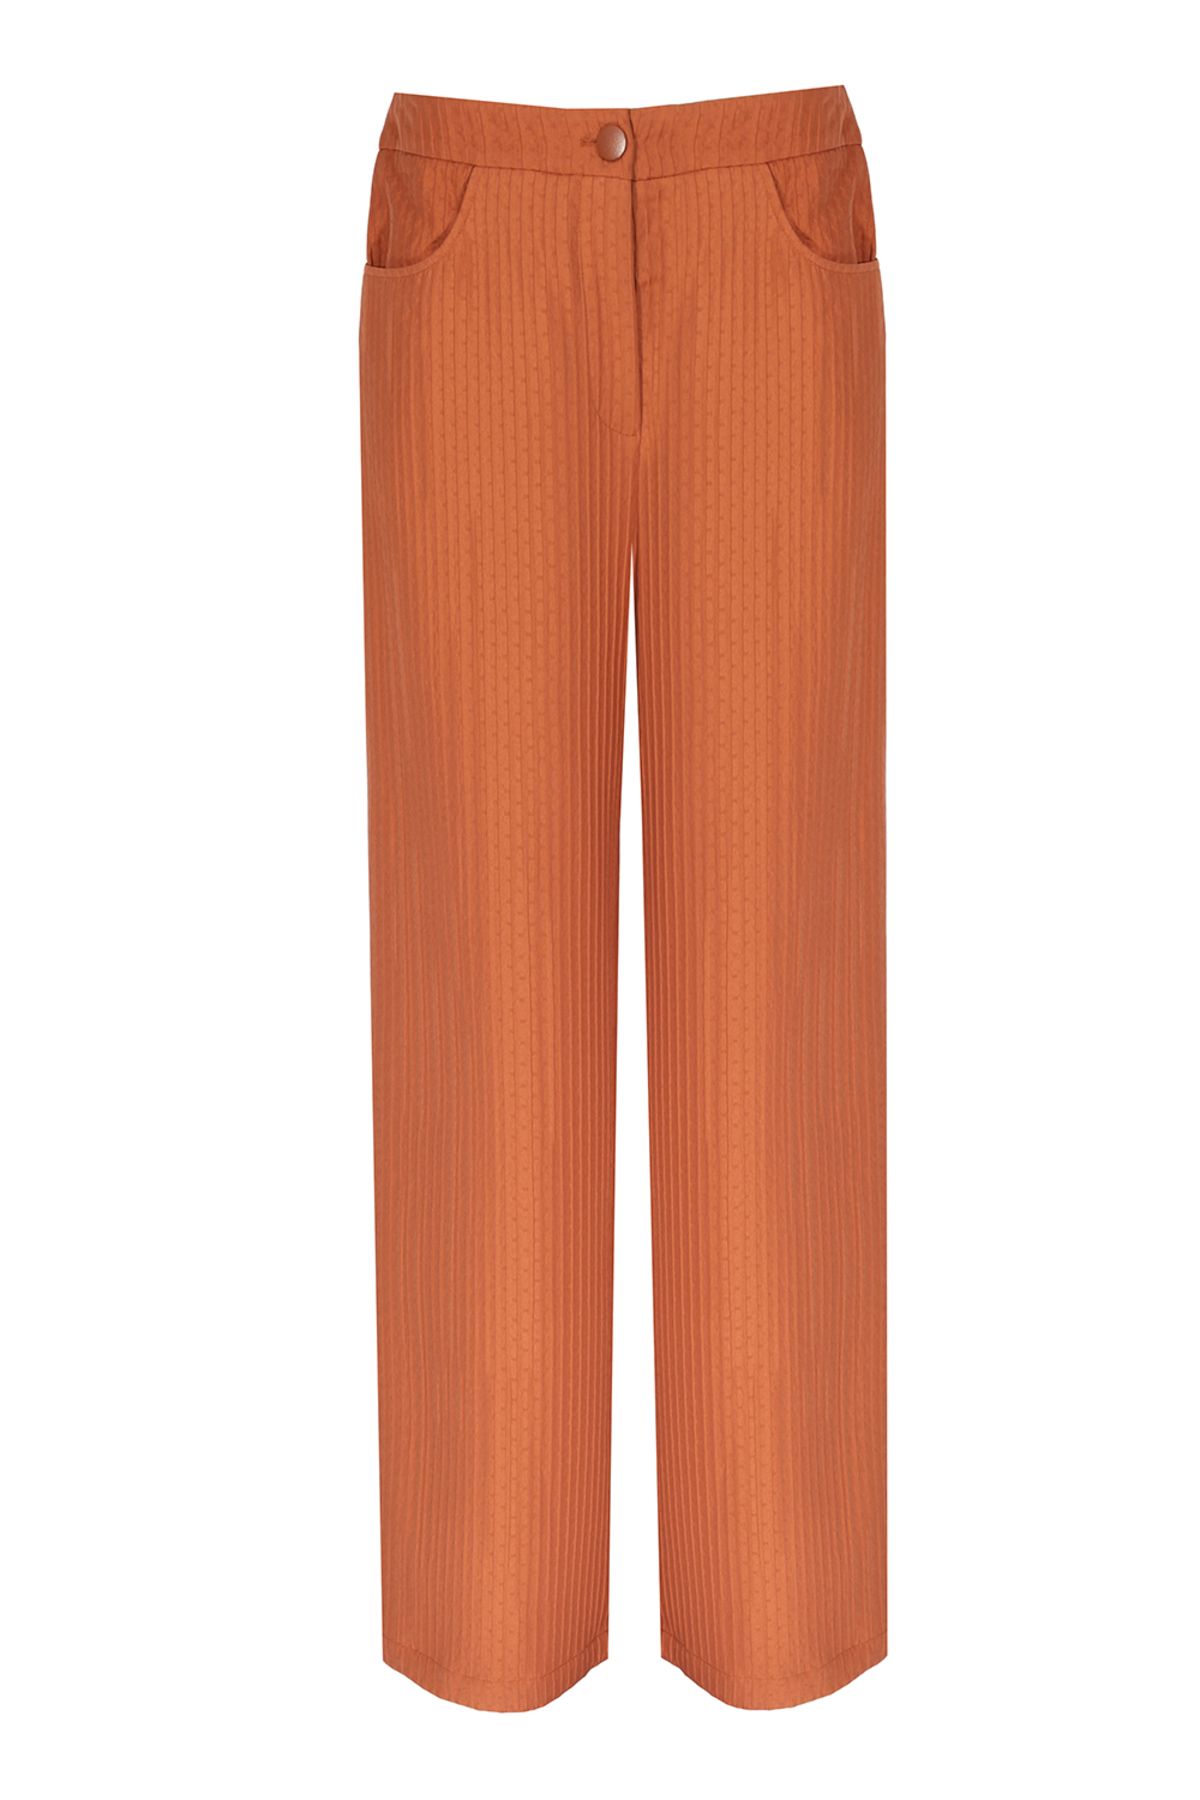 Perspective Sander Regular Fit Uzun Boy Tarçın Renk Kadın Pantolon